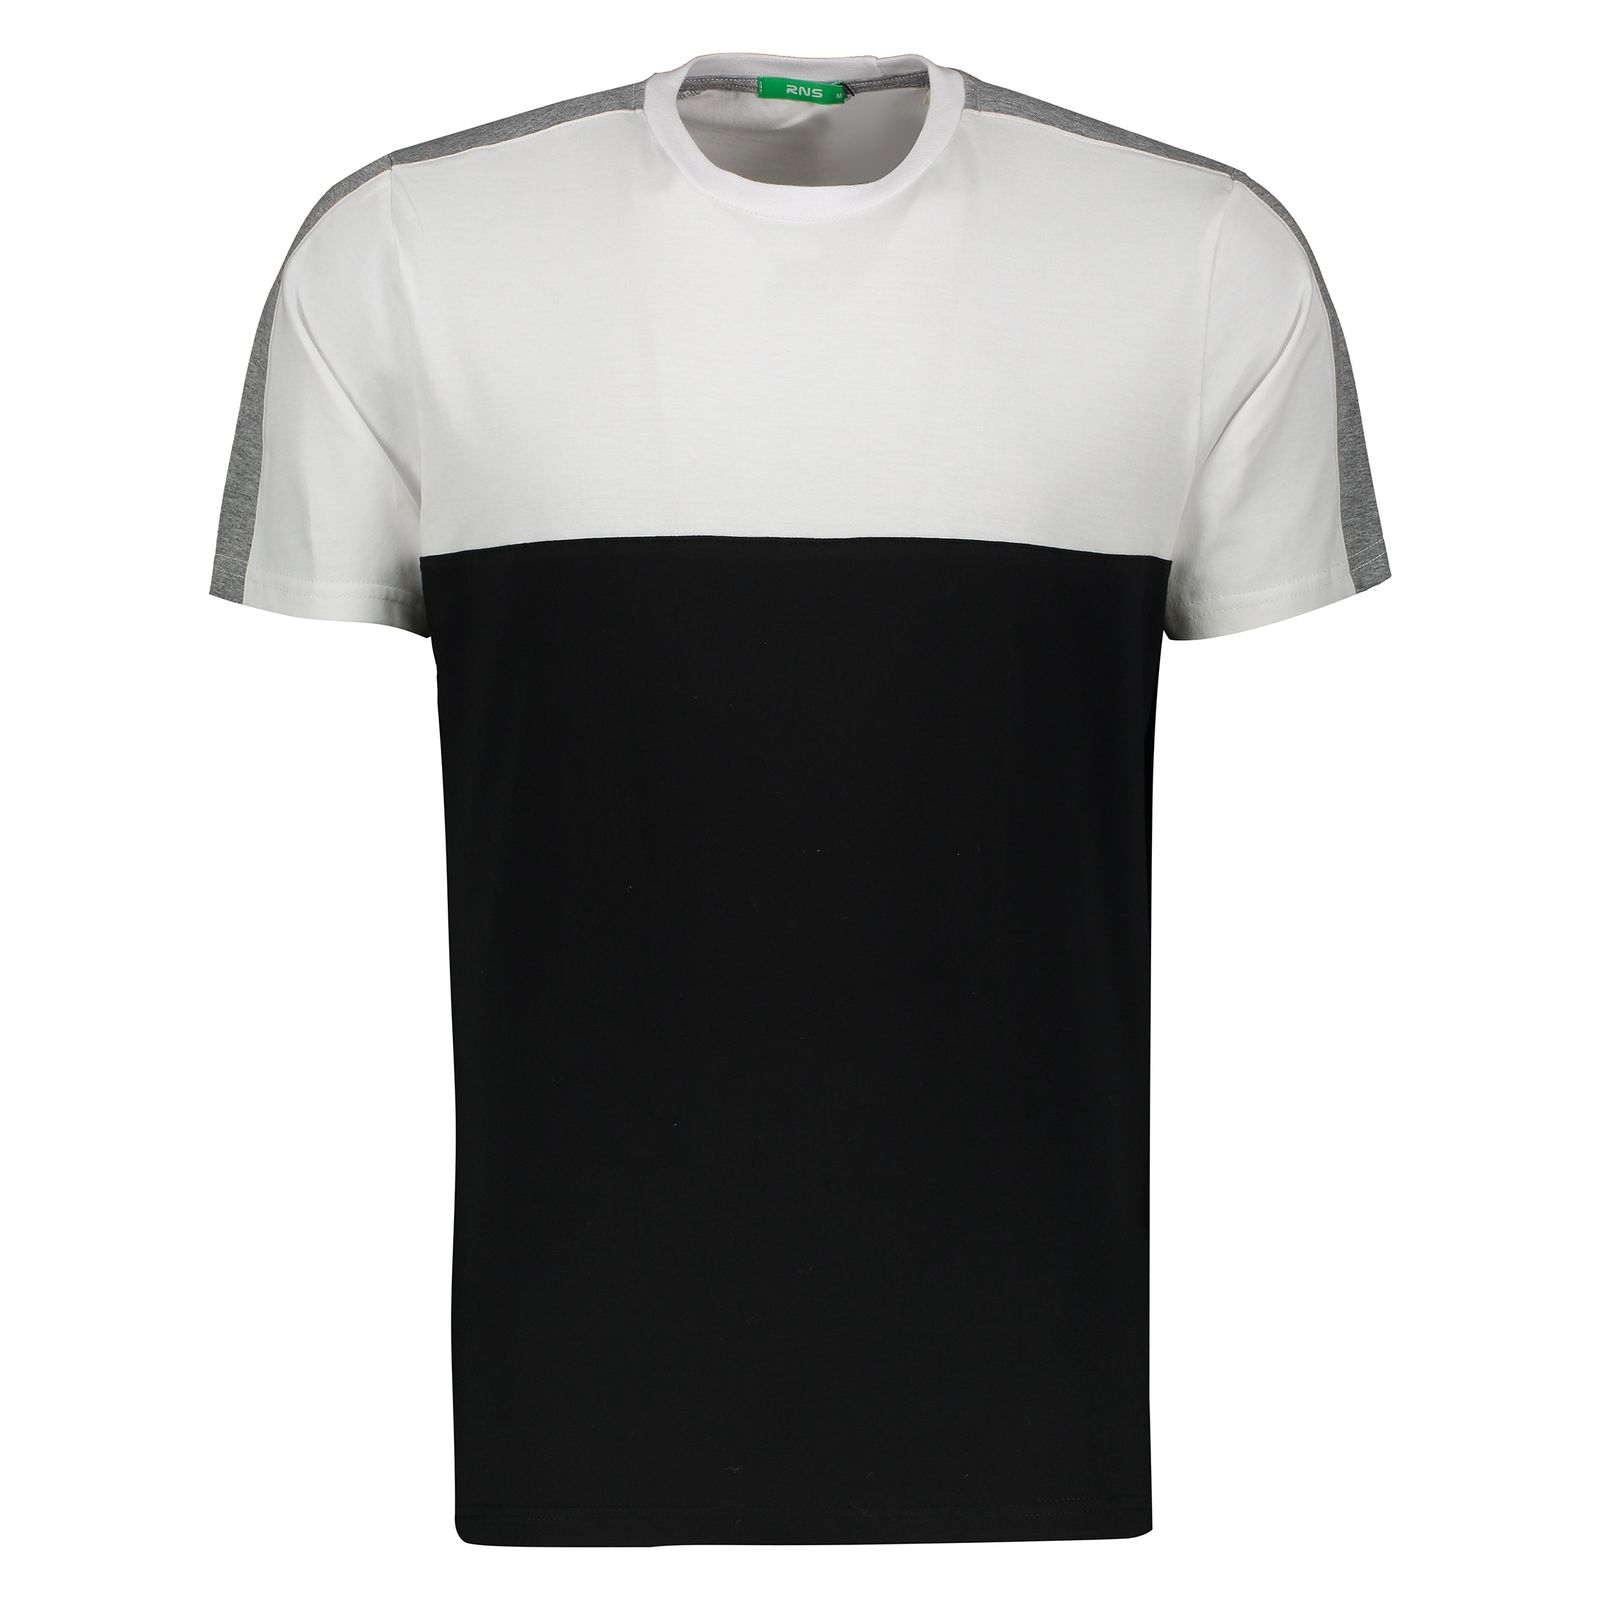 تی شرت مردانه آر ان اس مدل 1131109-01